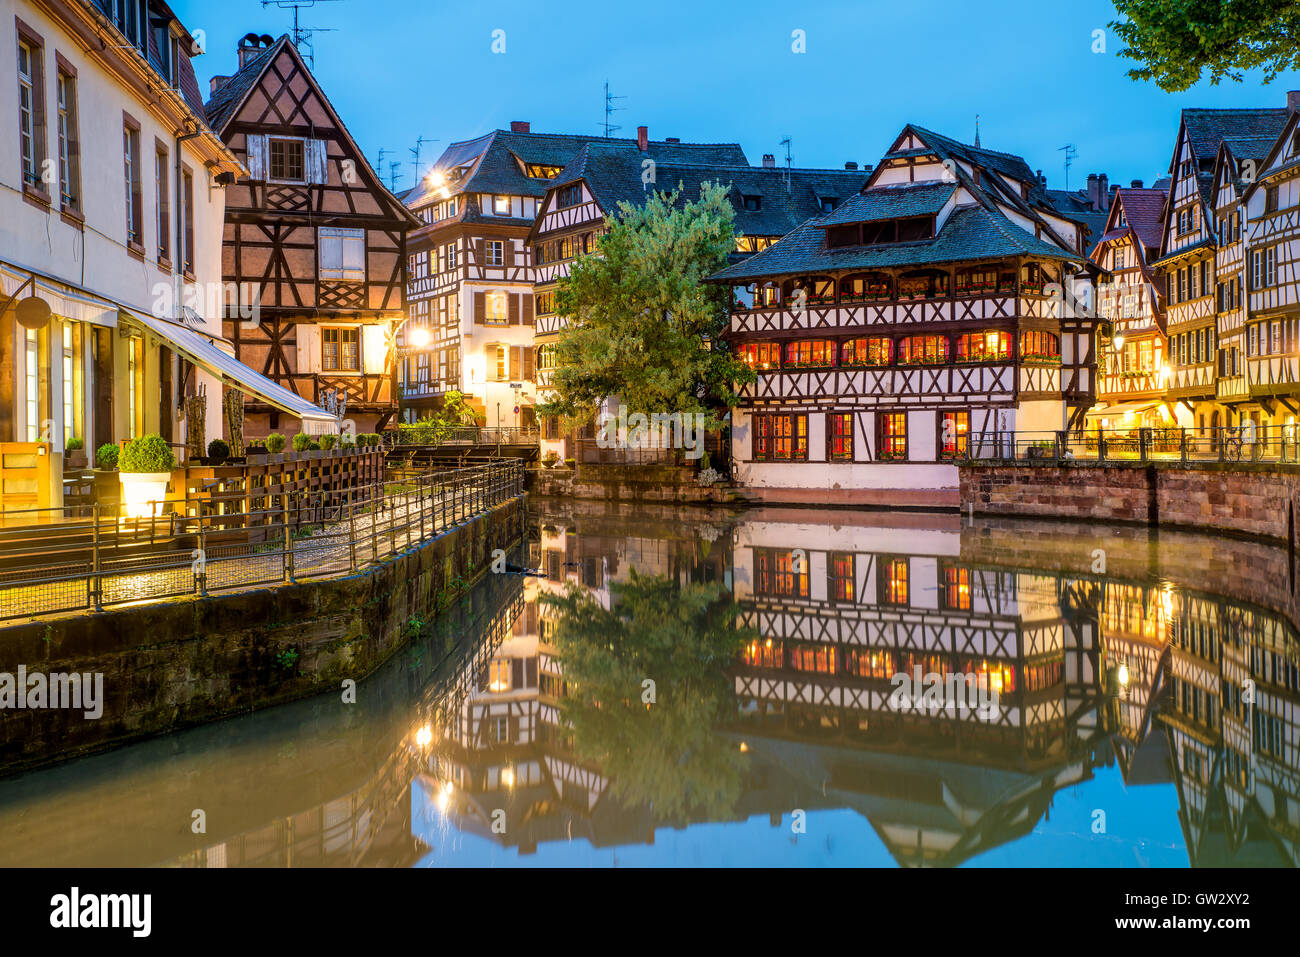 Malerische Fachwerkhäuser der Petite France in Straßburg, Frankreich. Franch traditionelle Häuser in Straßburg, Frankreich. Stockfoto